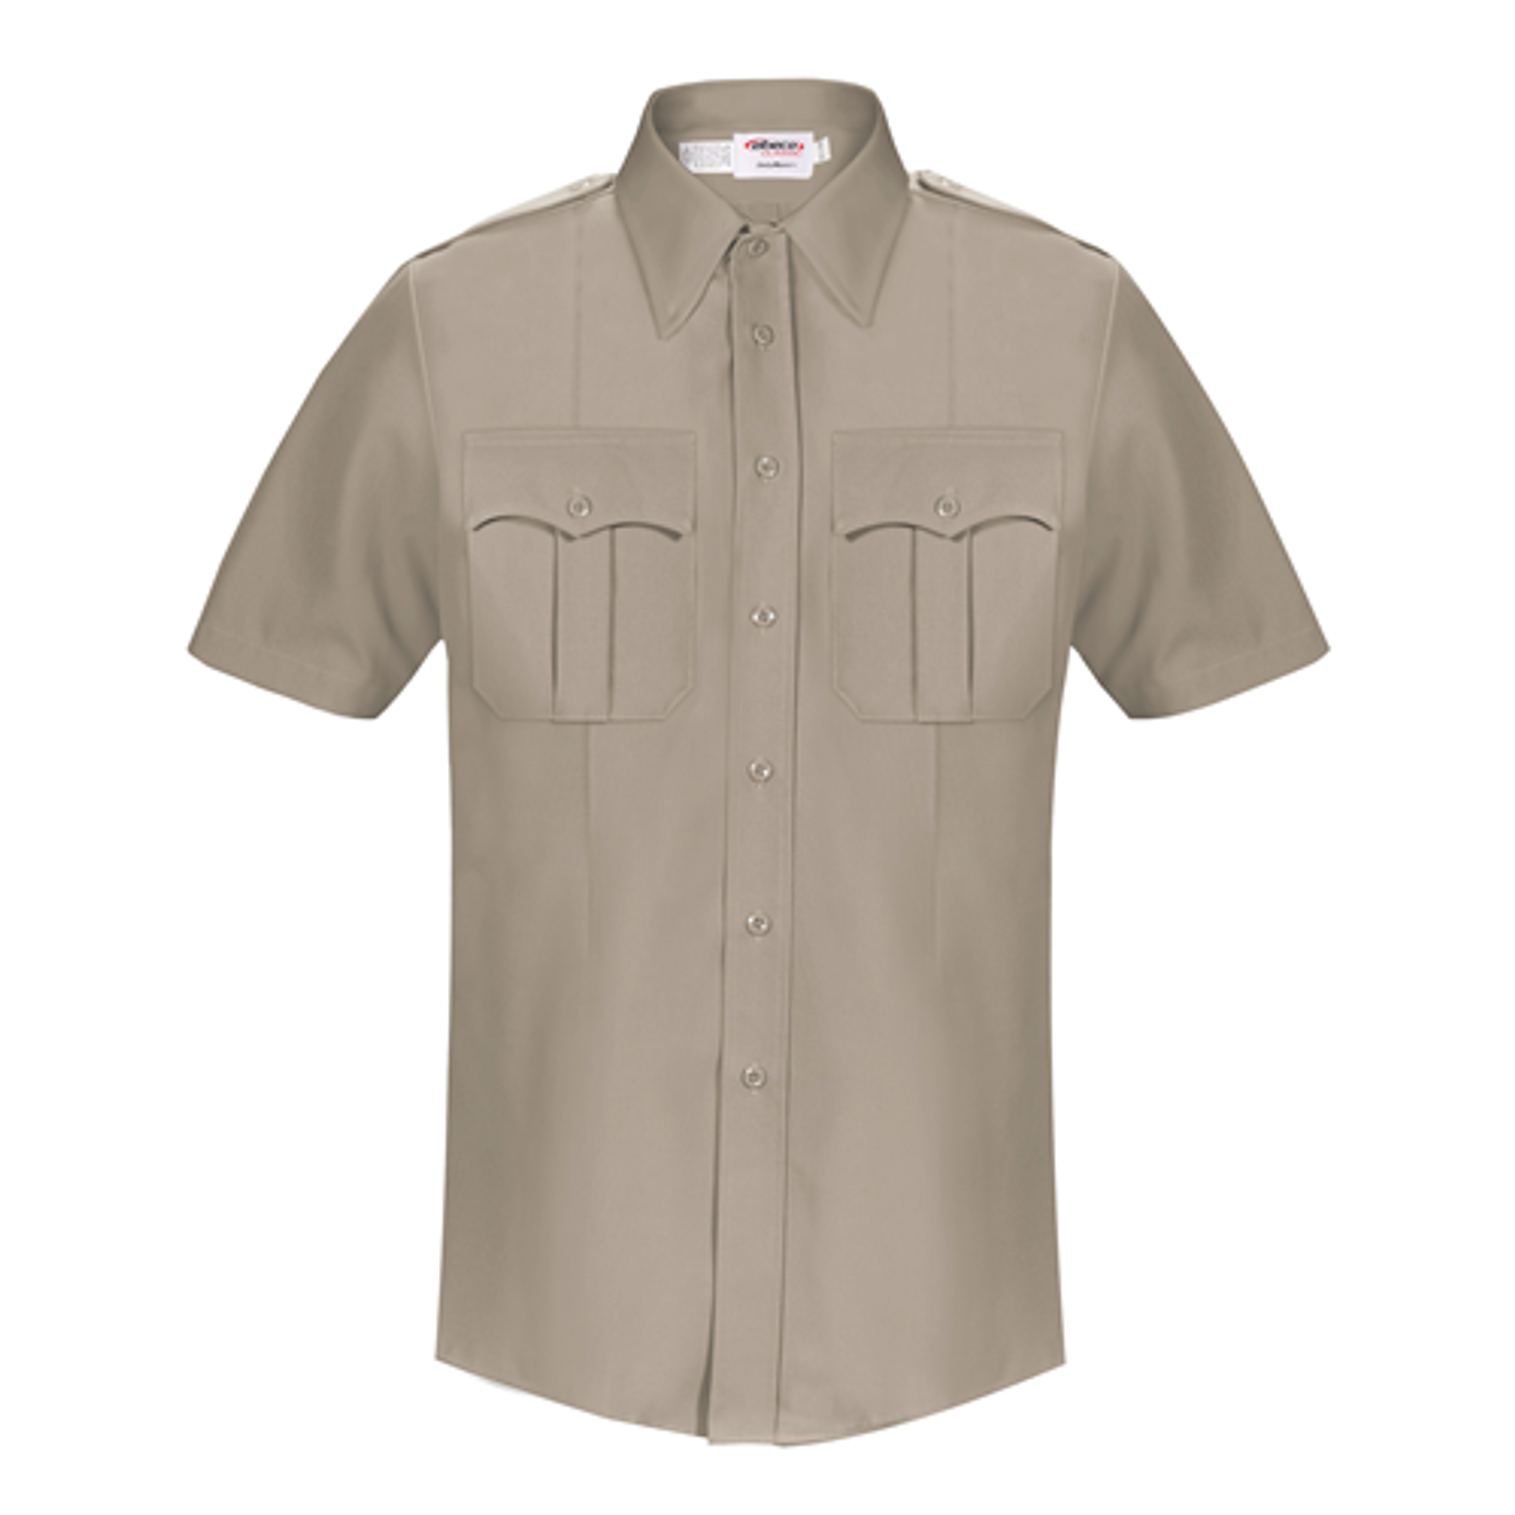 Dutymaxx Short Sleeve Shirt - KRELB-5582D-18